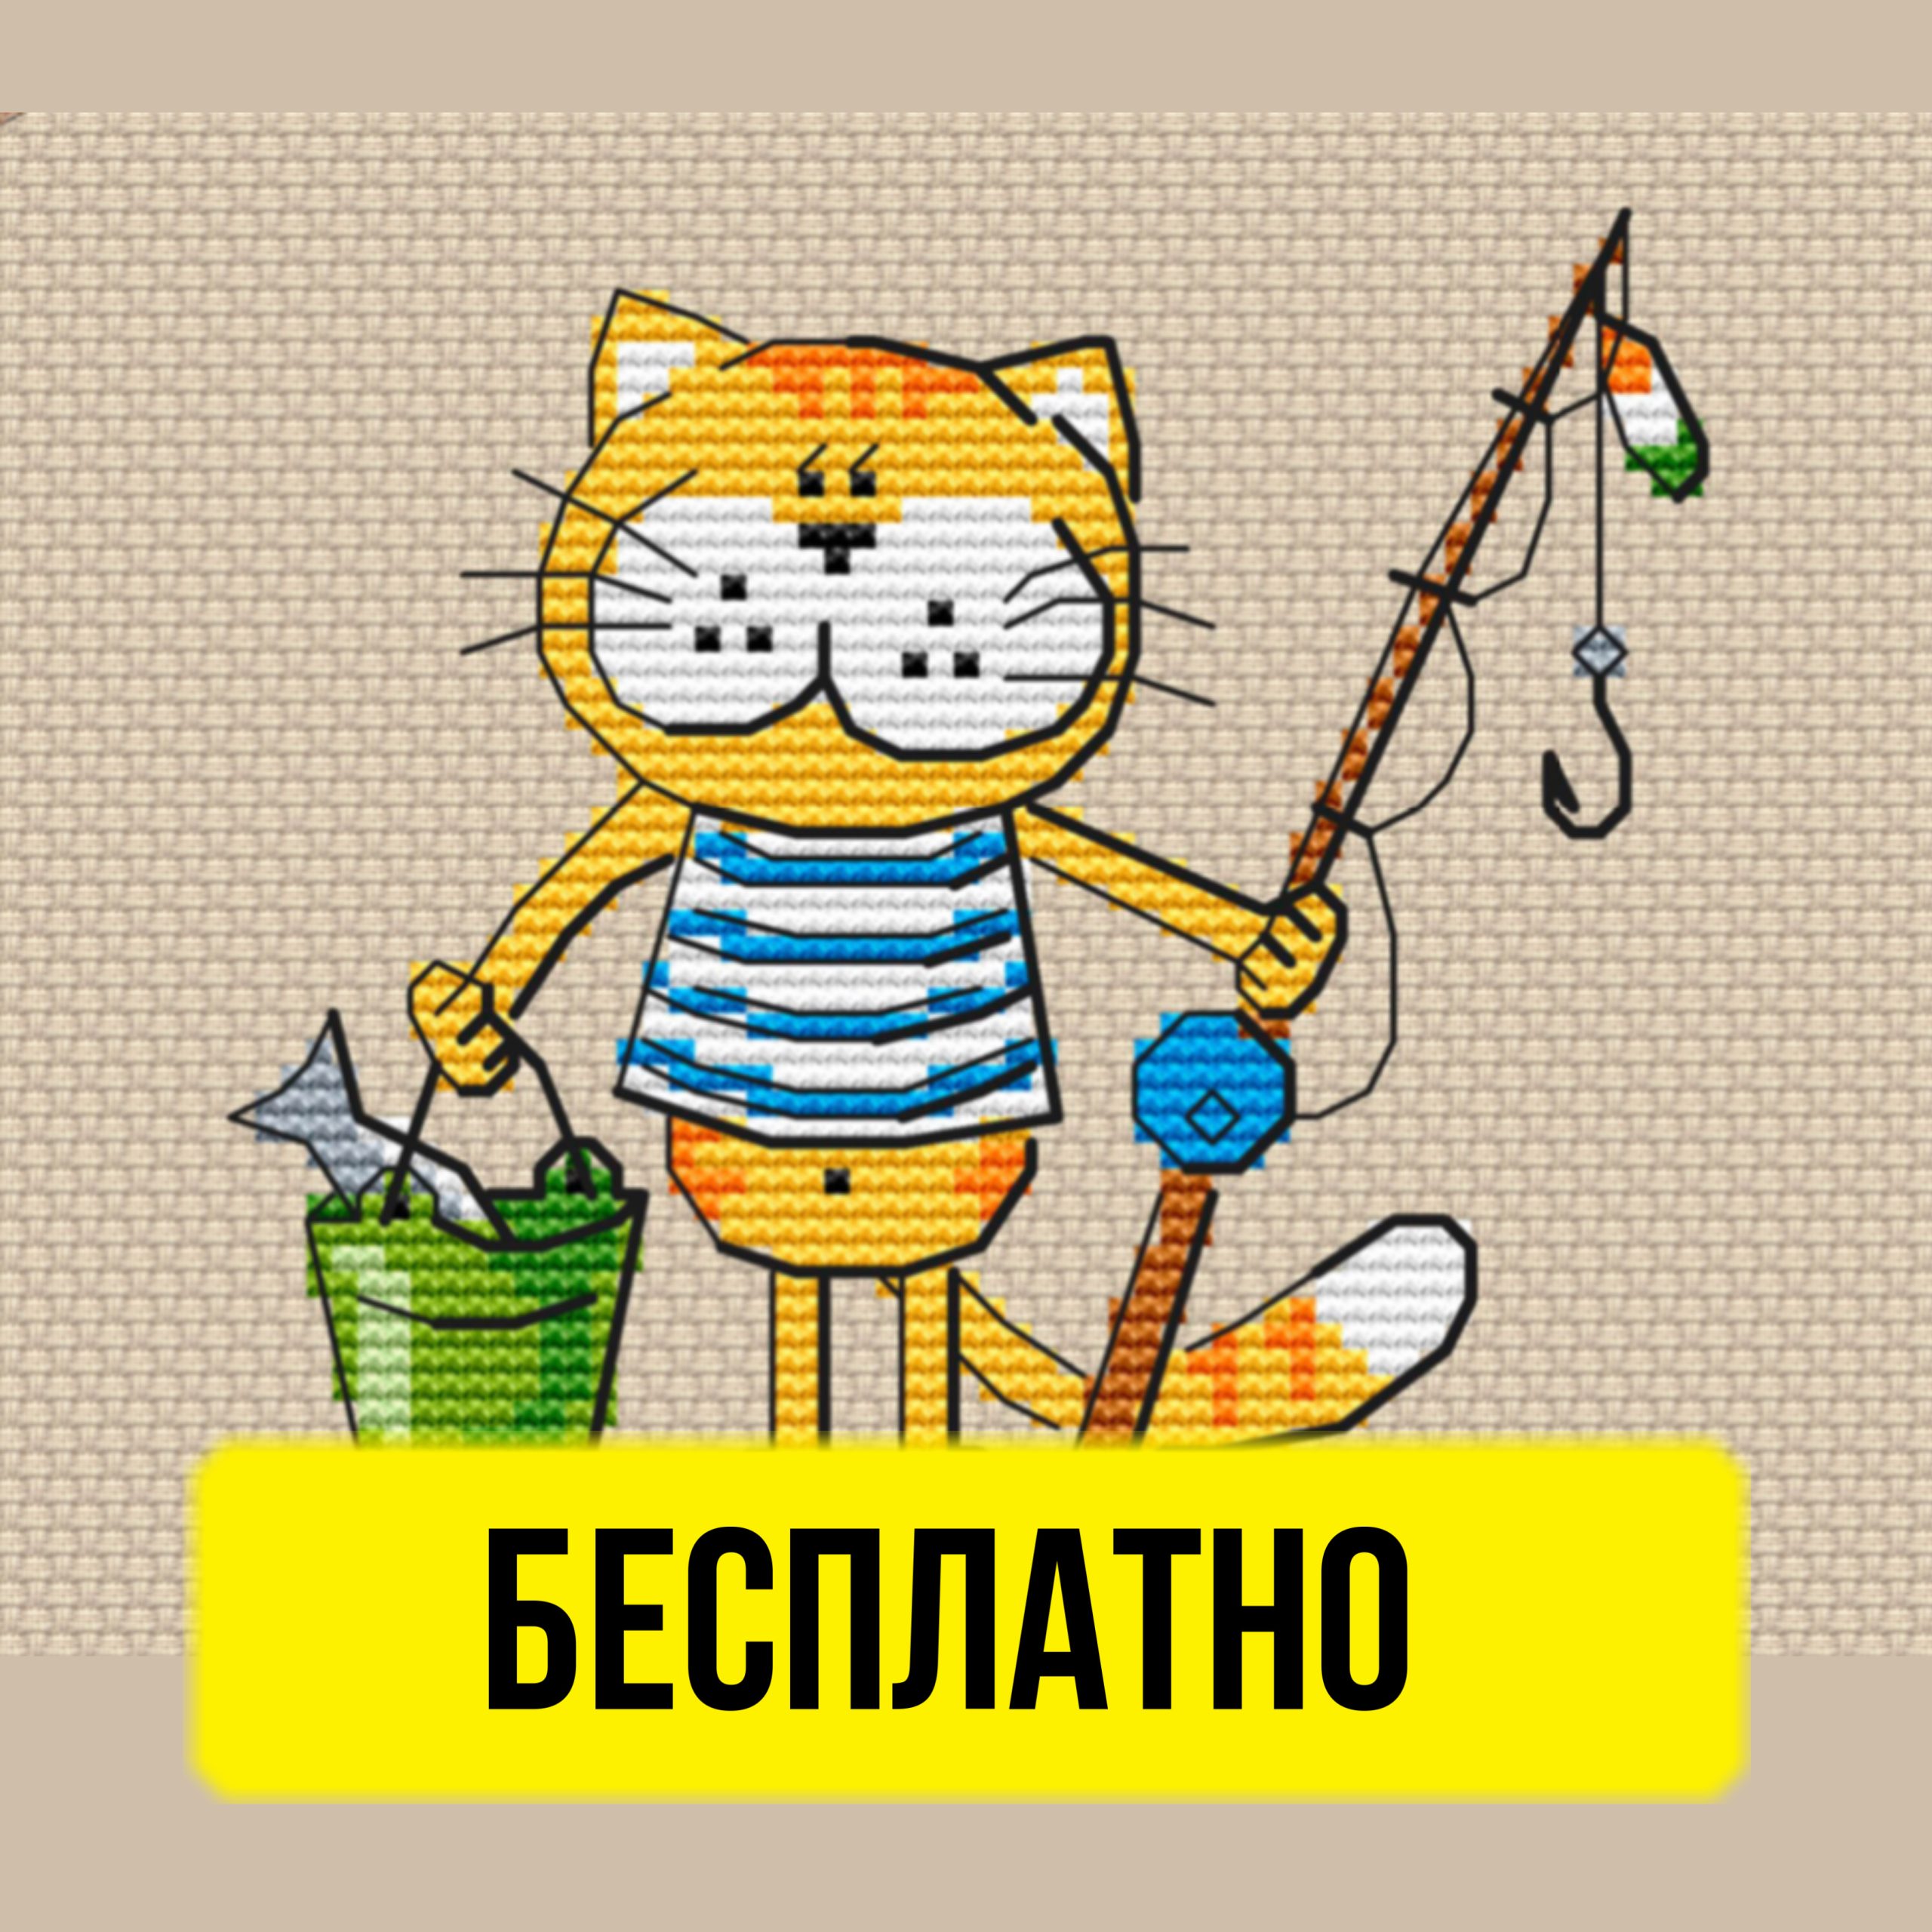 Бесплатная схема вышивания крестиком с котом рыбаком от Ольги Болачковой.